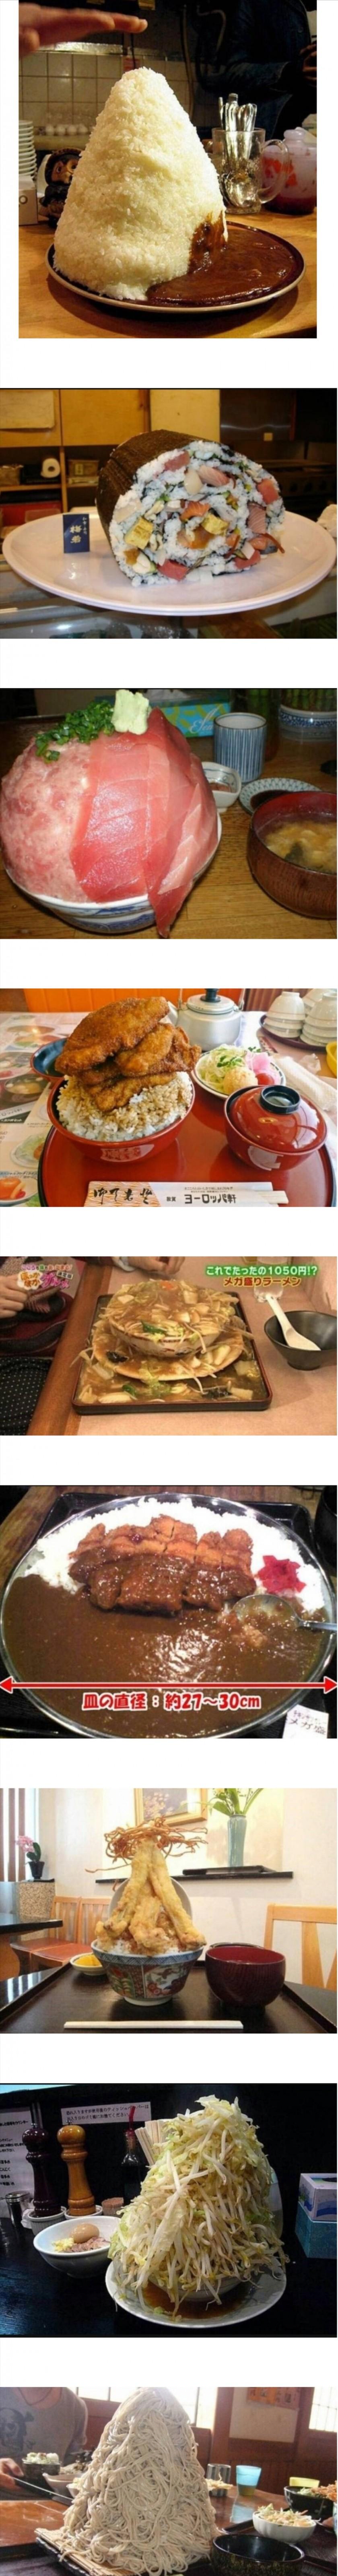 일본, 10분안에 다먹으면 공짜 음식들.jpg